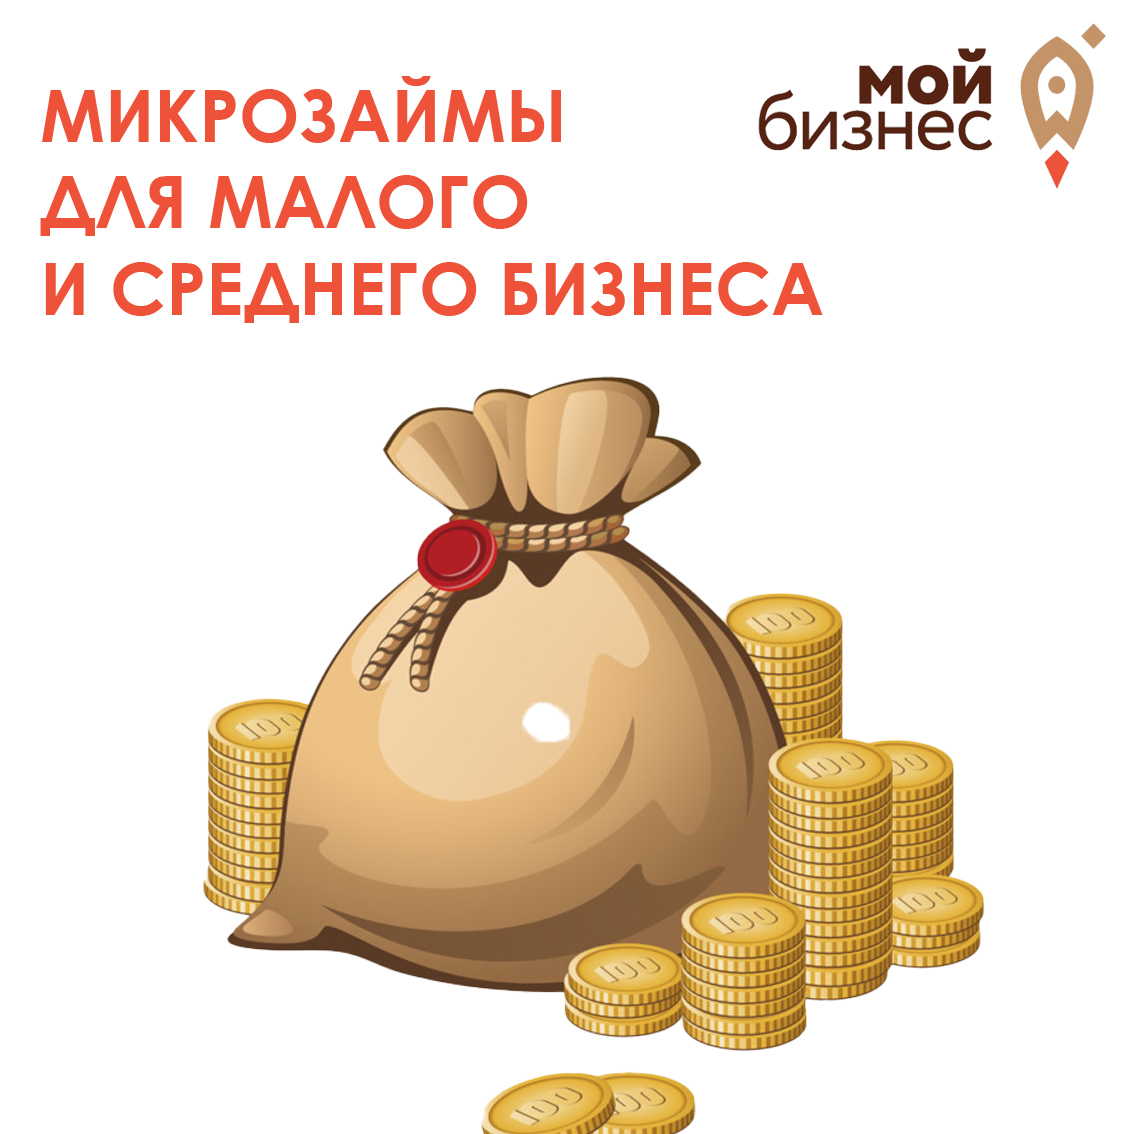 В Волгоградской области для малого и среднего бизнеса действуют антикризисные программы микрофинансирования